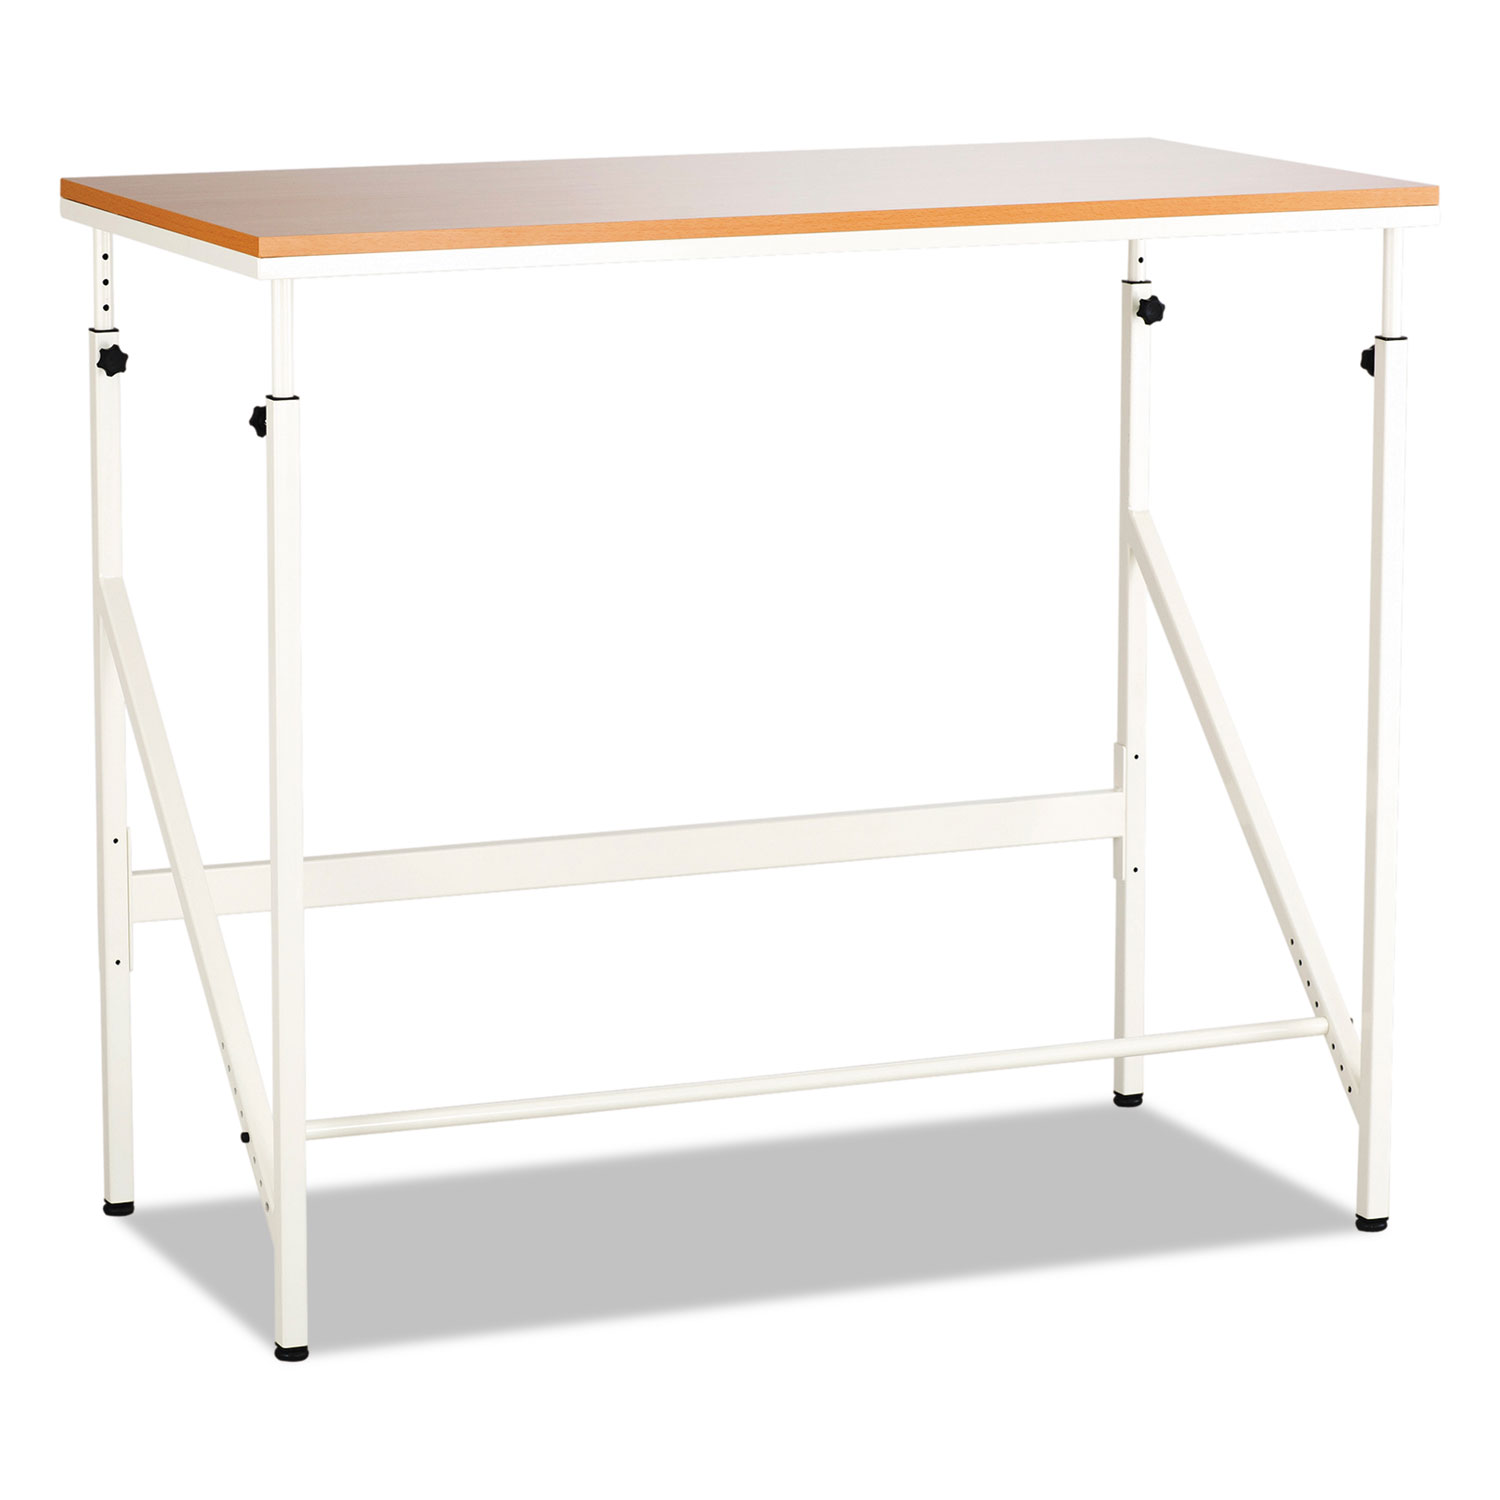 Standing Height Desk, 48w x 24d x 50h, Beech/Cream